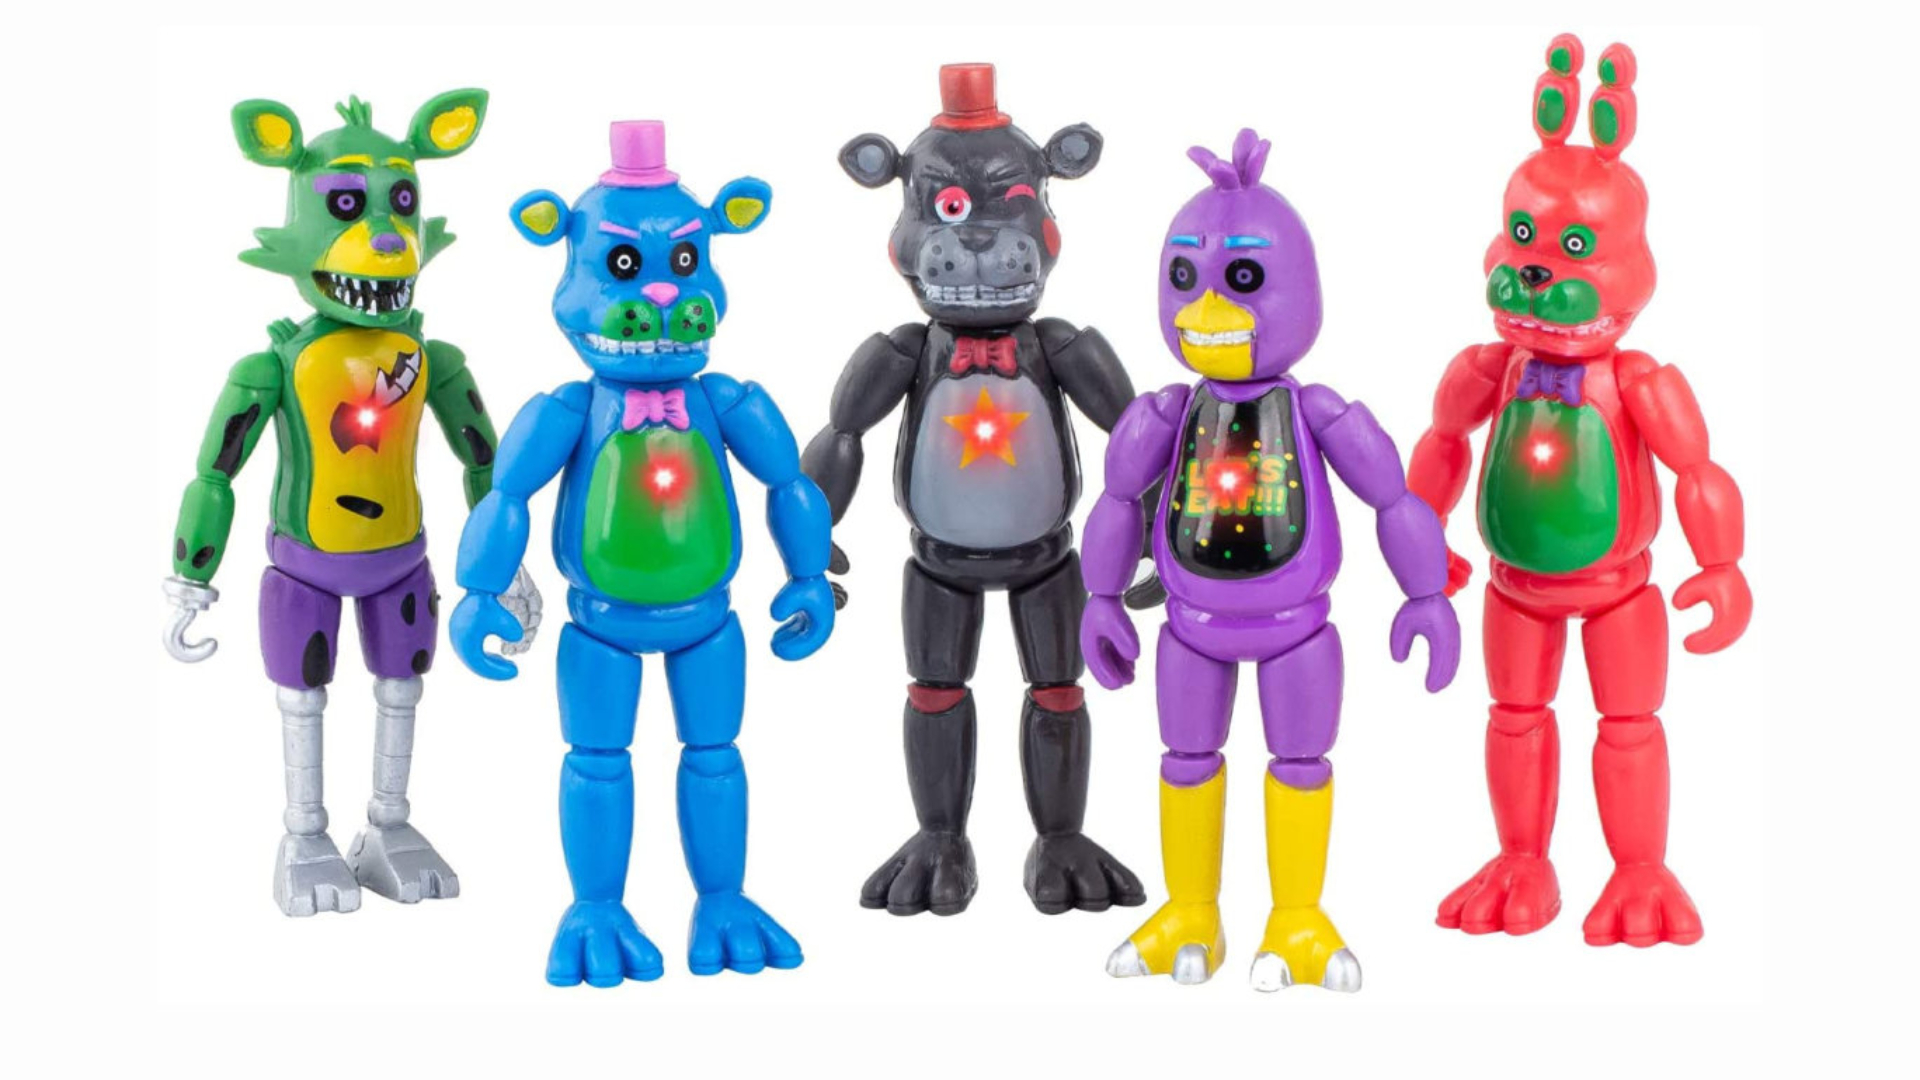 FNAF toys 2022 figures